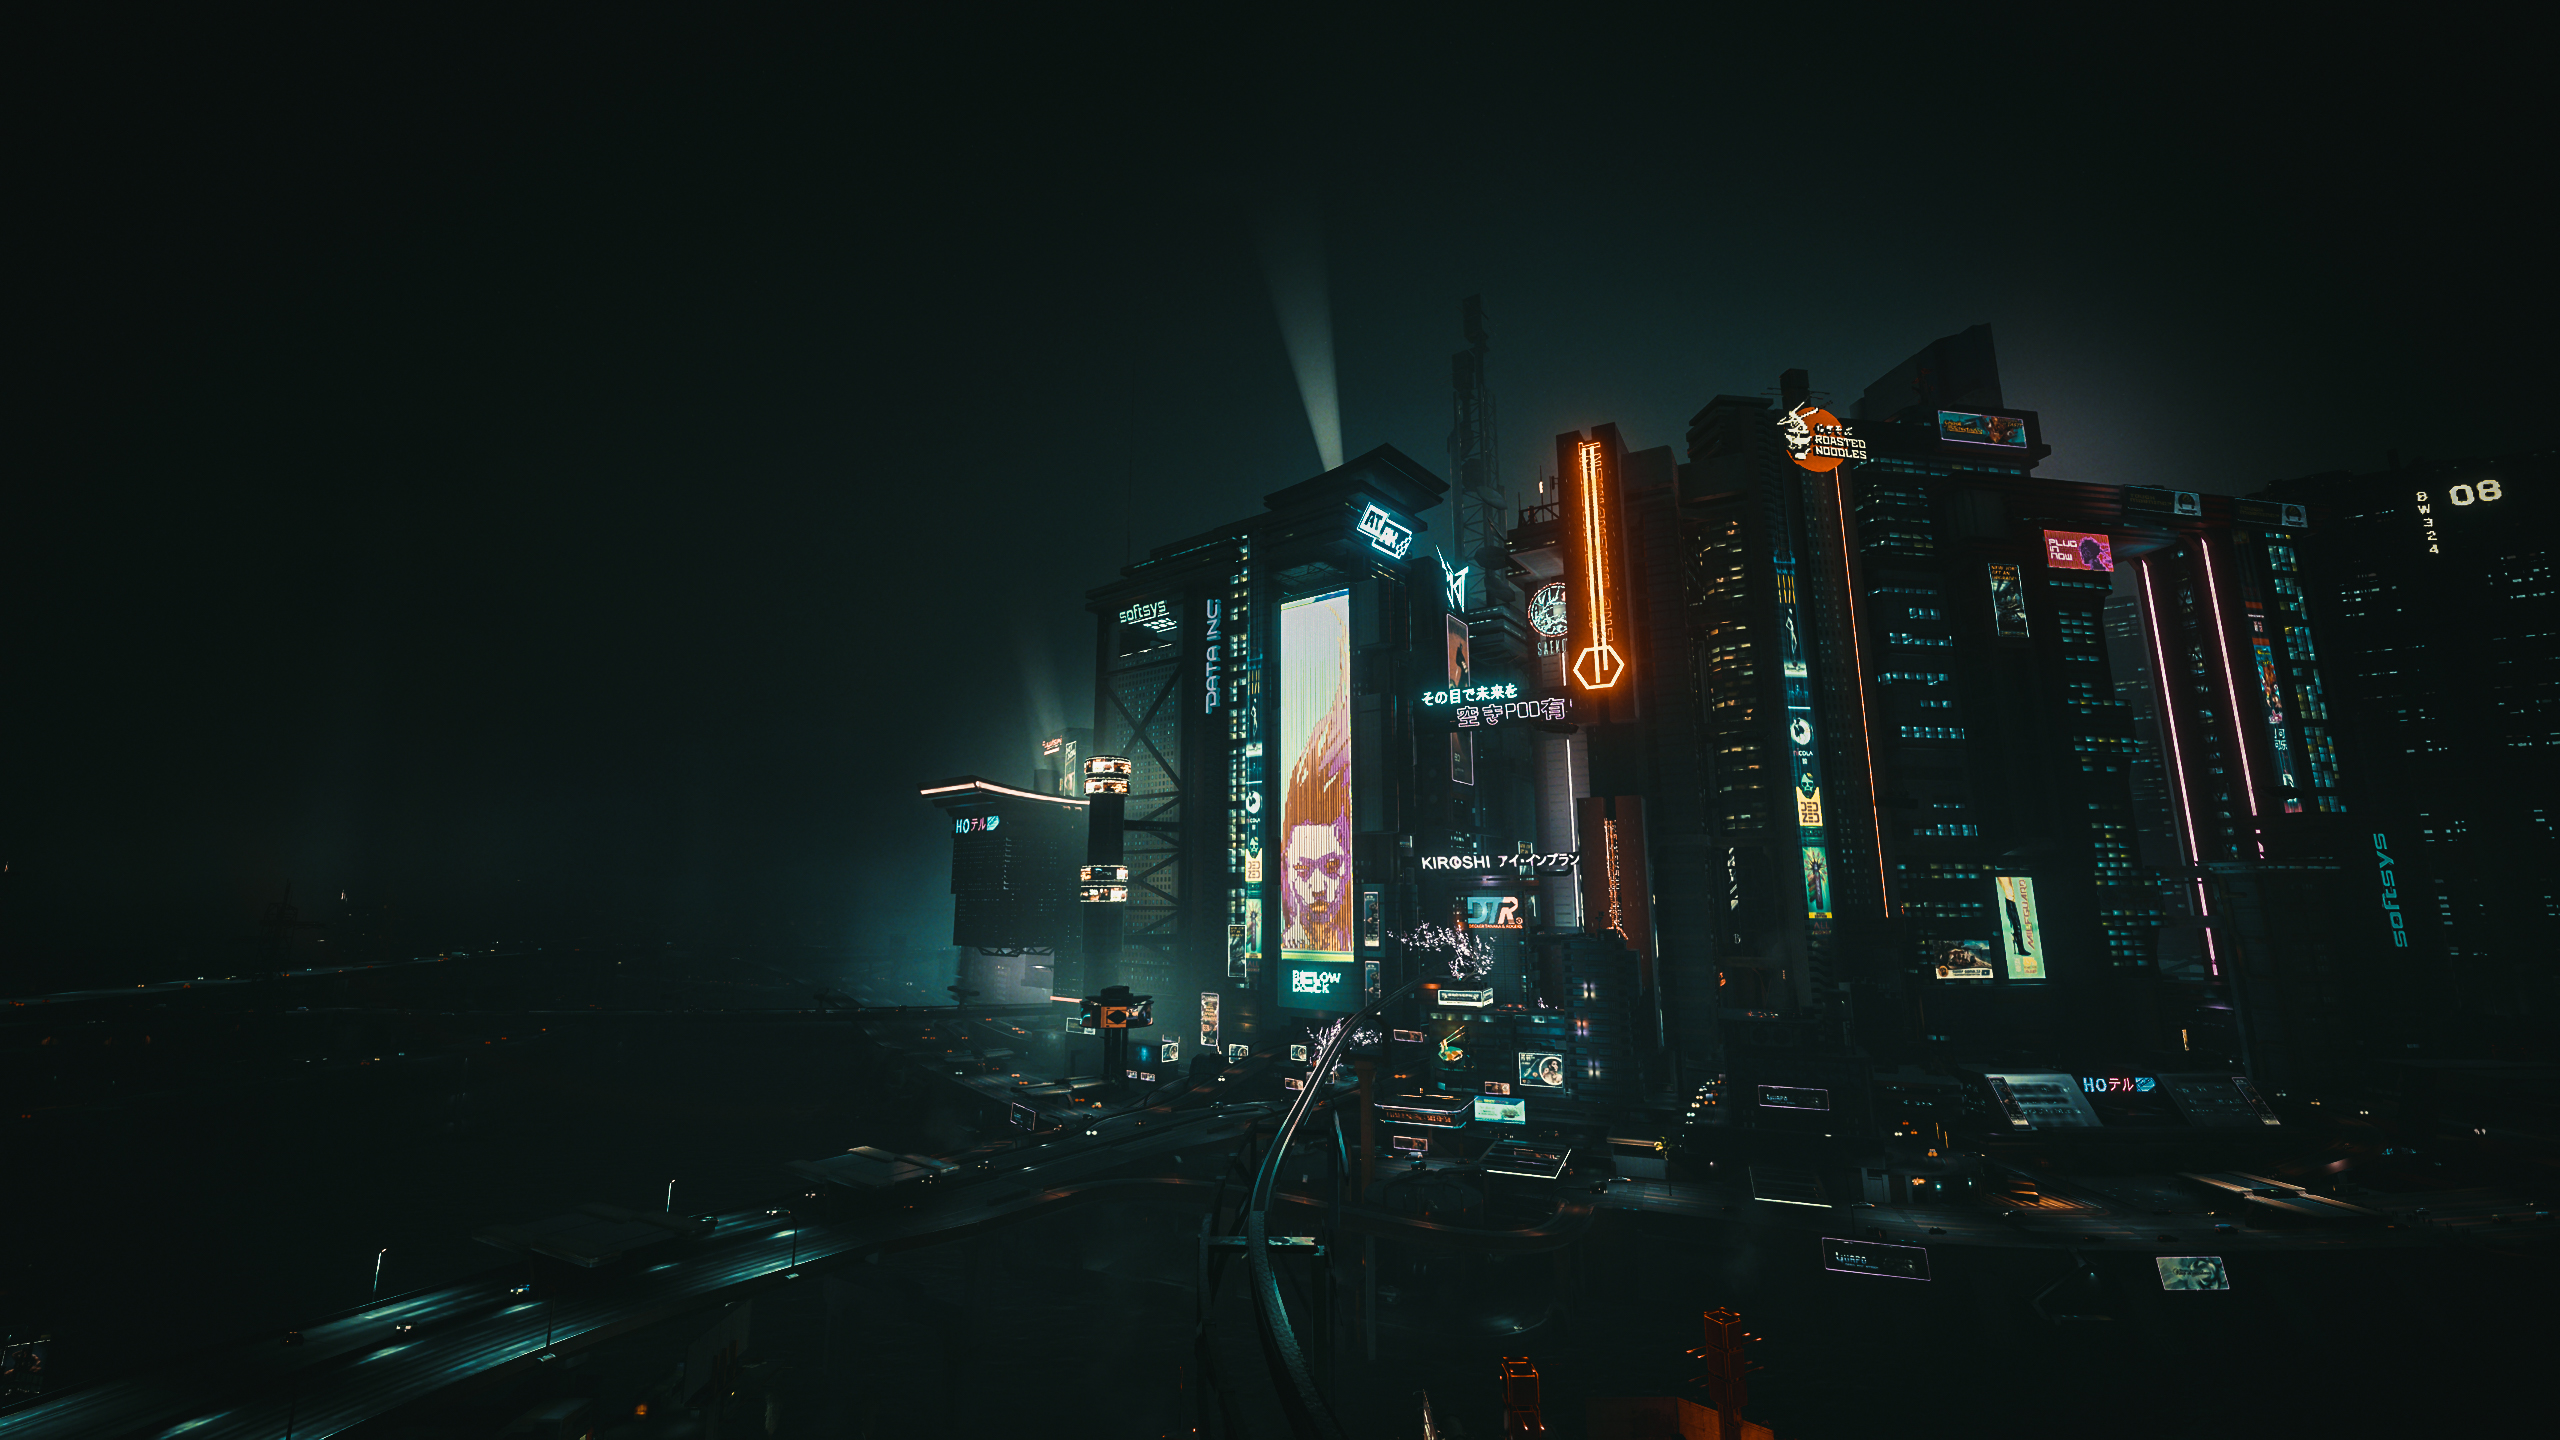 Cyberpunk Cyberpunk 2077 Cyber City Futuristic City Neon Video Games 2560x1440